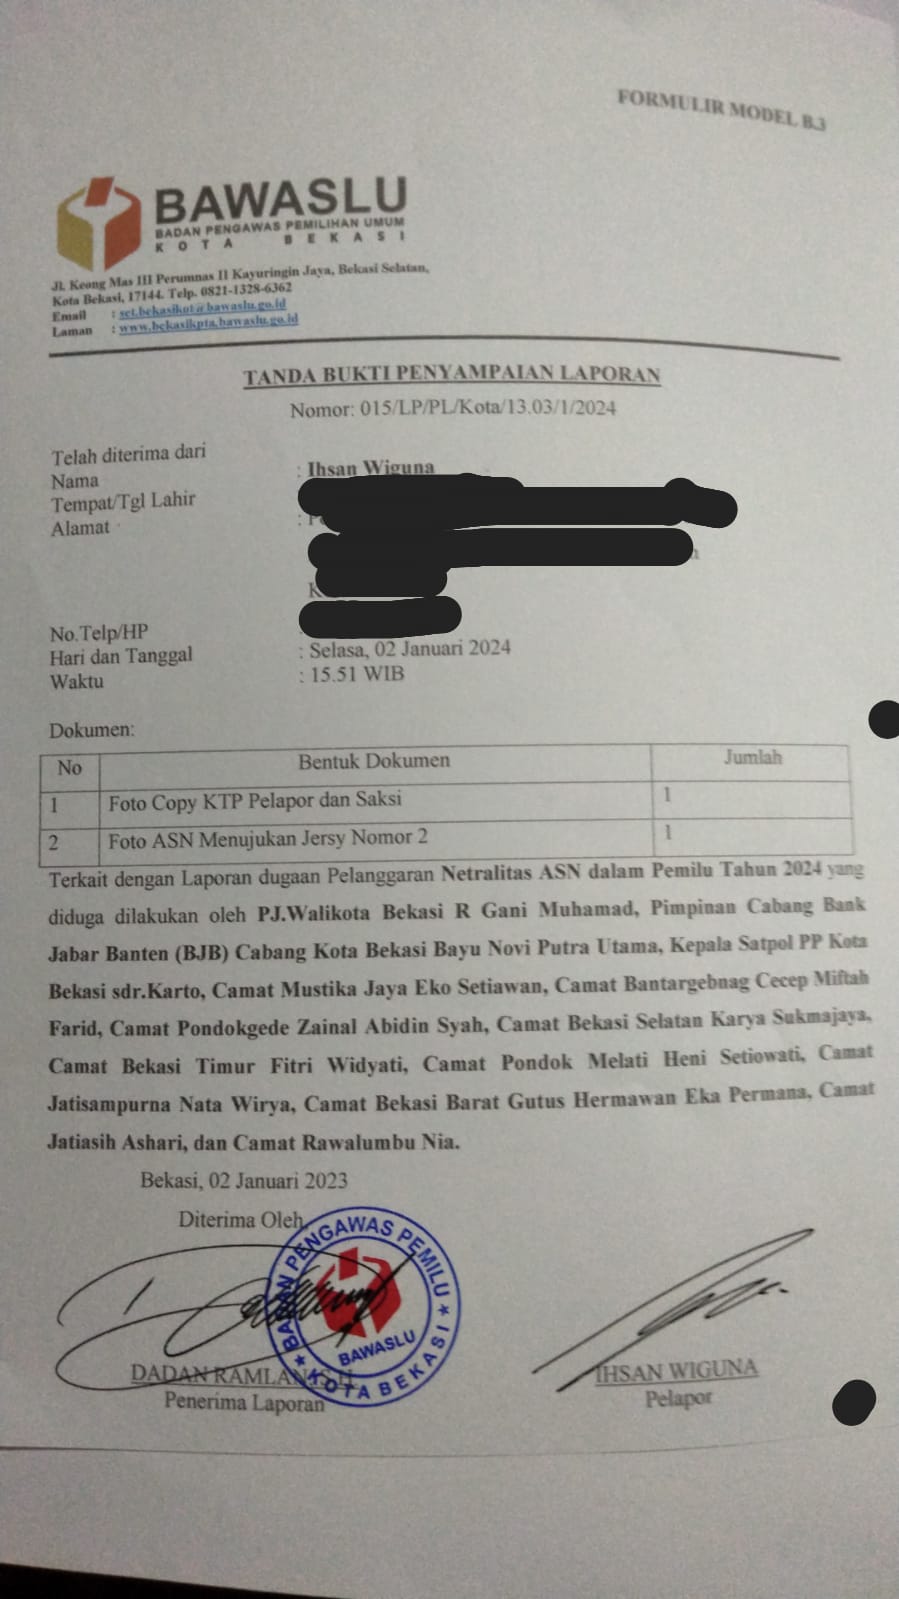 Gerakan Pemuda Marhaenis Kota Bekasi melaporkan dugaan kasus ketidak netralan ASN Kota Bekasi